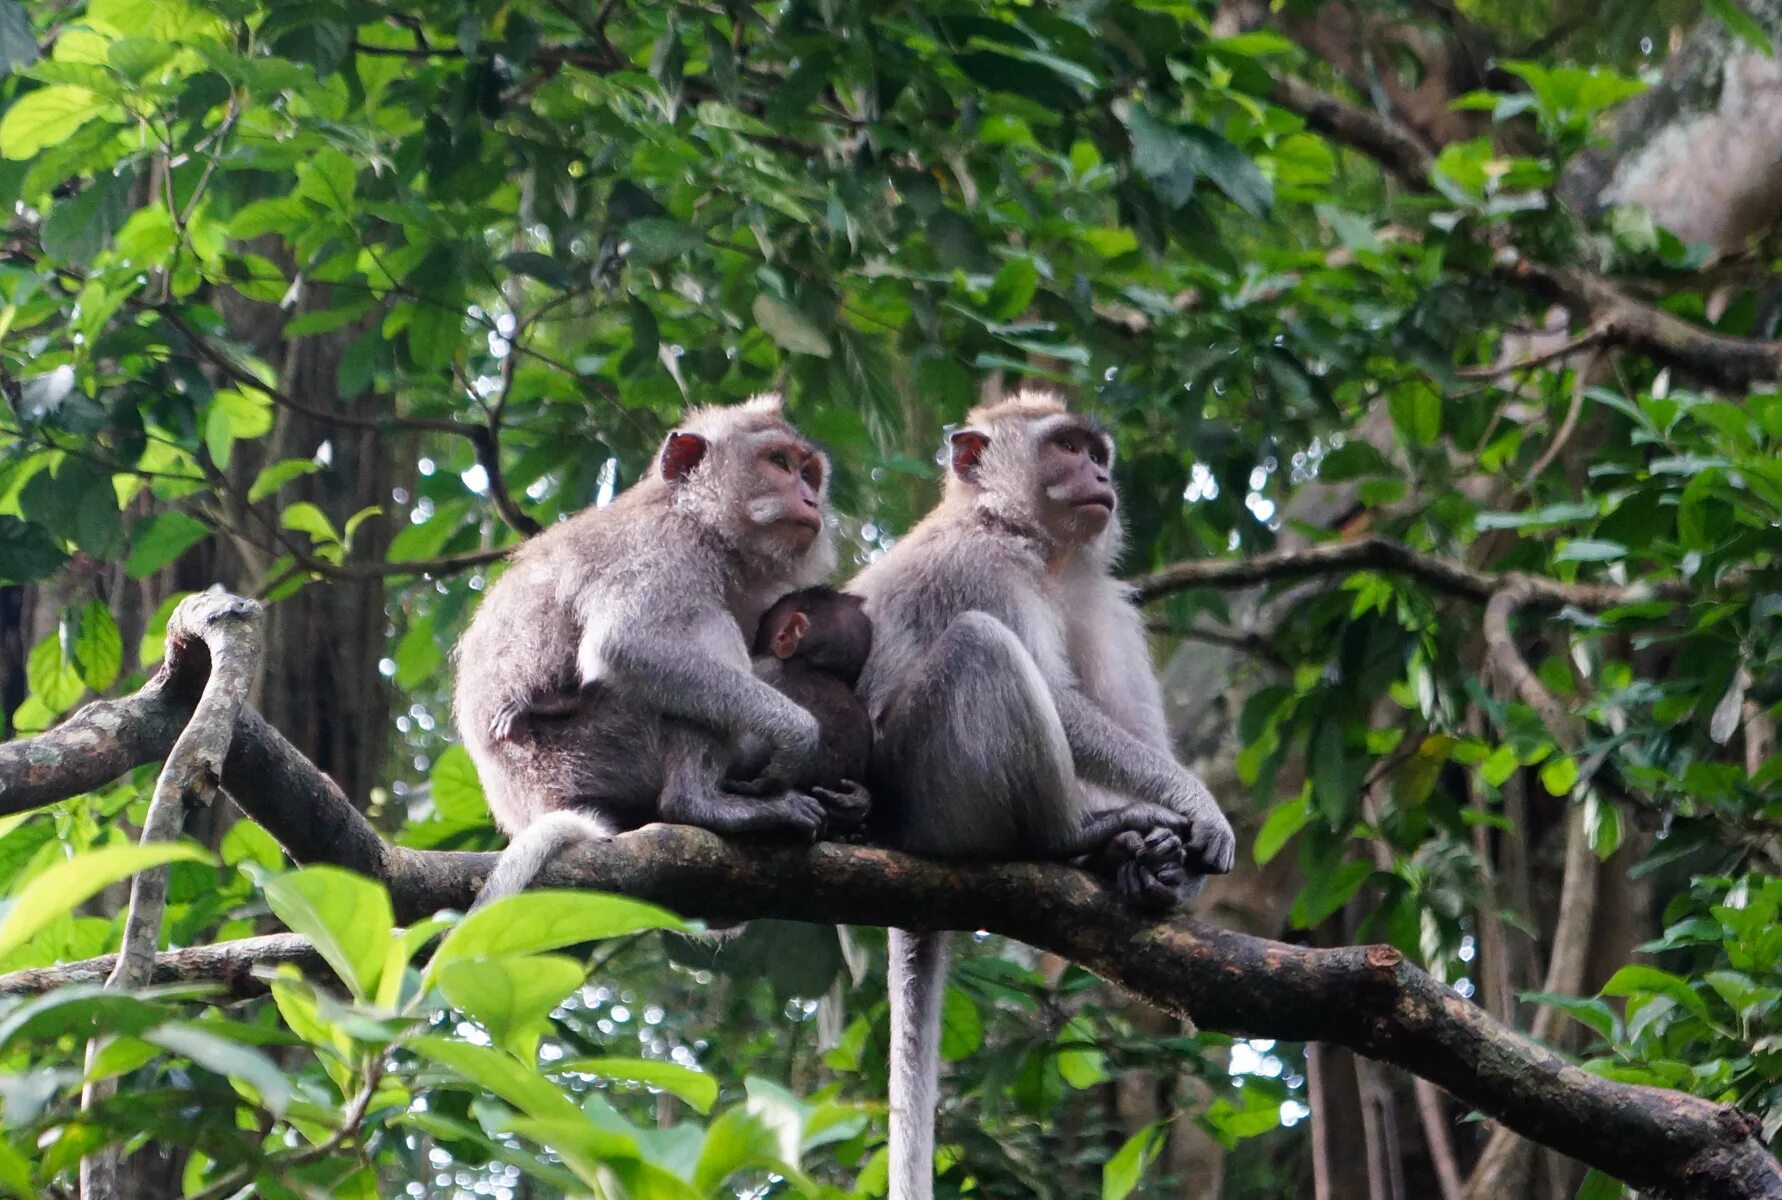 Jungle monkeys. Убуд Бали лес обезьян. Обезьяны экваториальных лесов Африки. Джунгли Африки шимпанзе. Обезьяна тропического леса Индии.